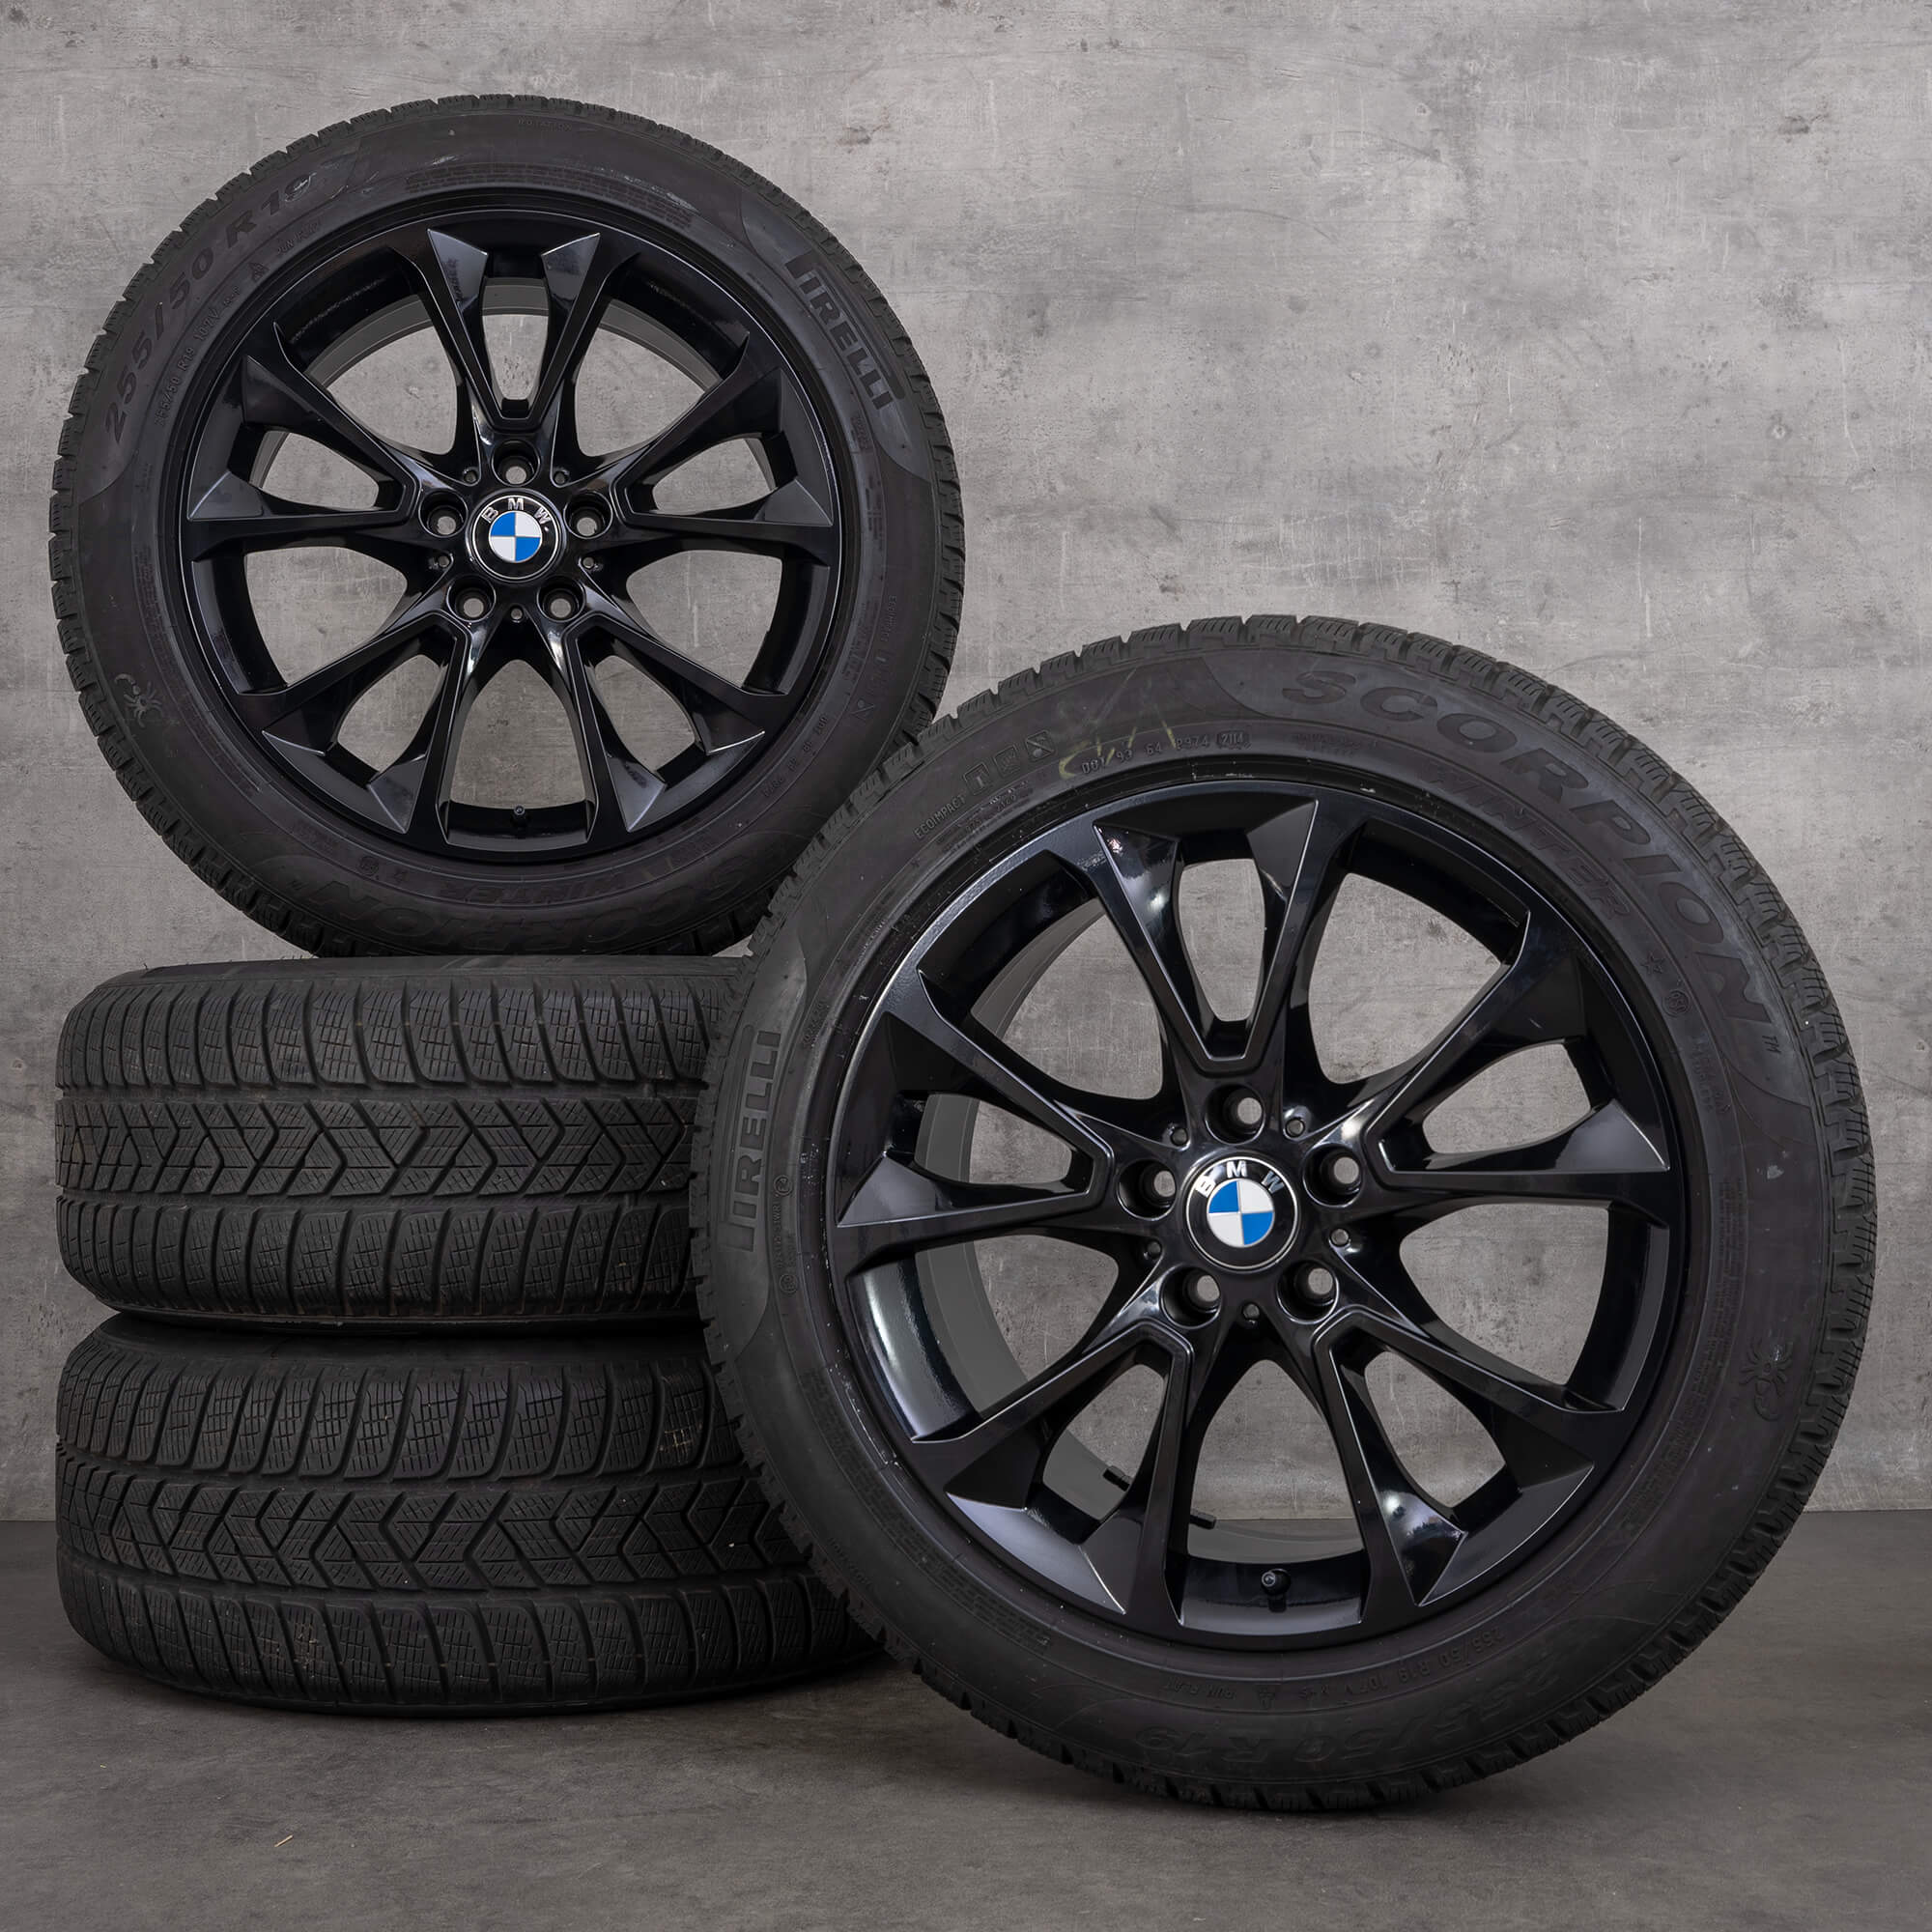 BMW jante 19 pouces X5 E70 F15 pneus hiver roues style 449 6853955